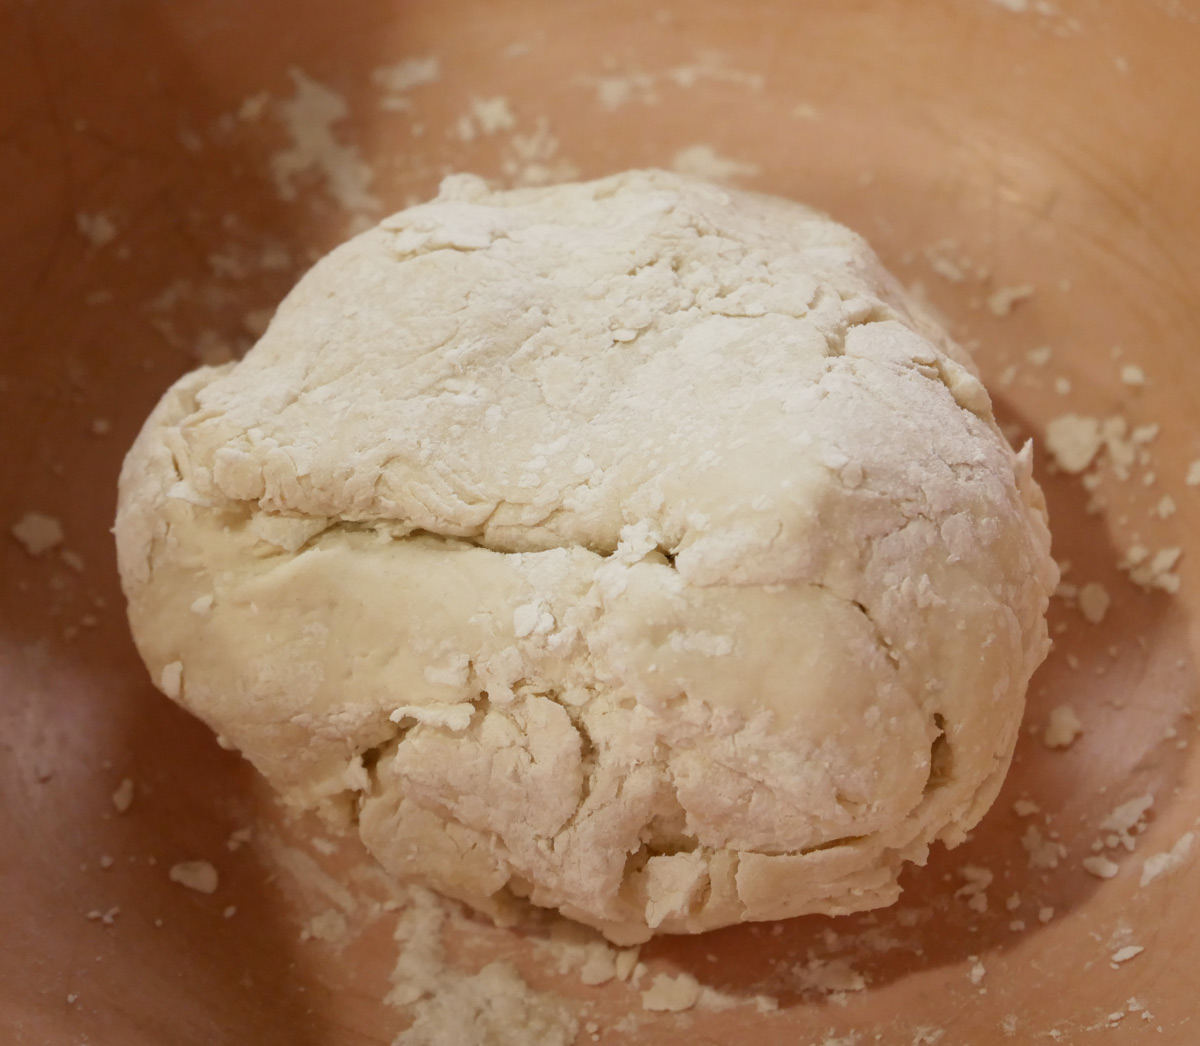 https://theaprilblake.com/wp-content/uploads/2021/01/ramen-pasta-roller-dough.jpg